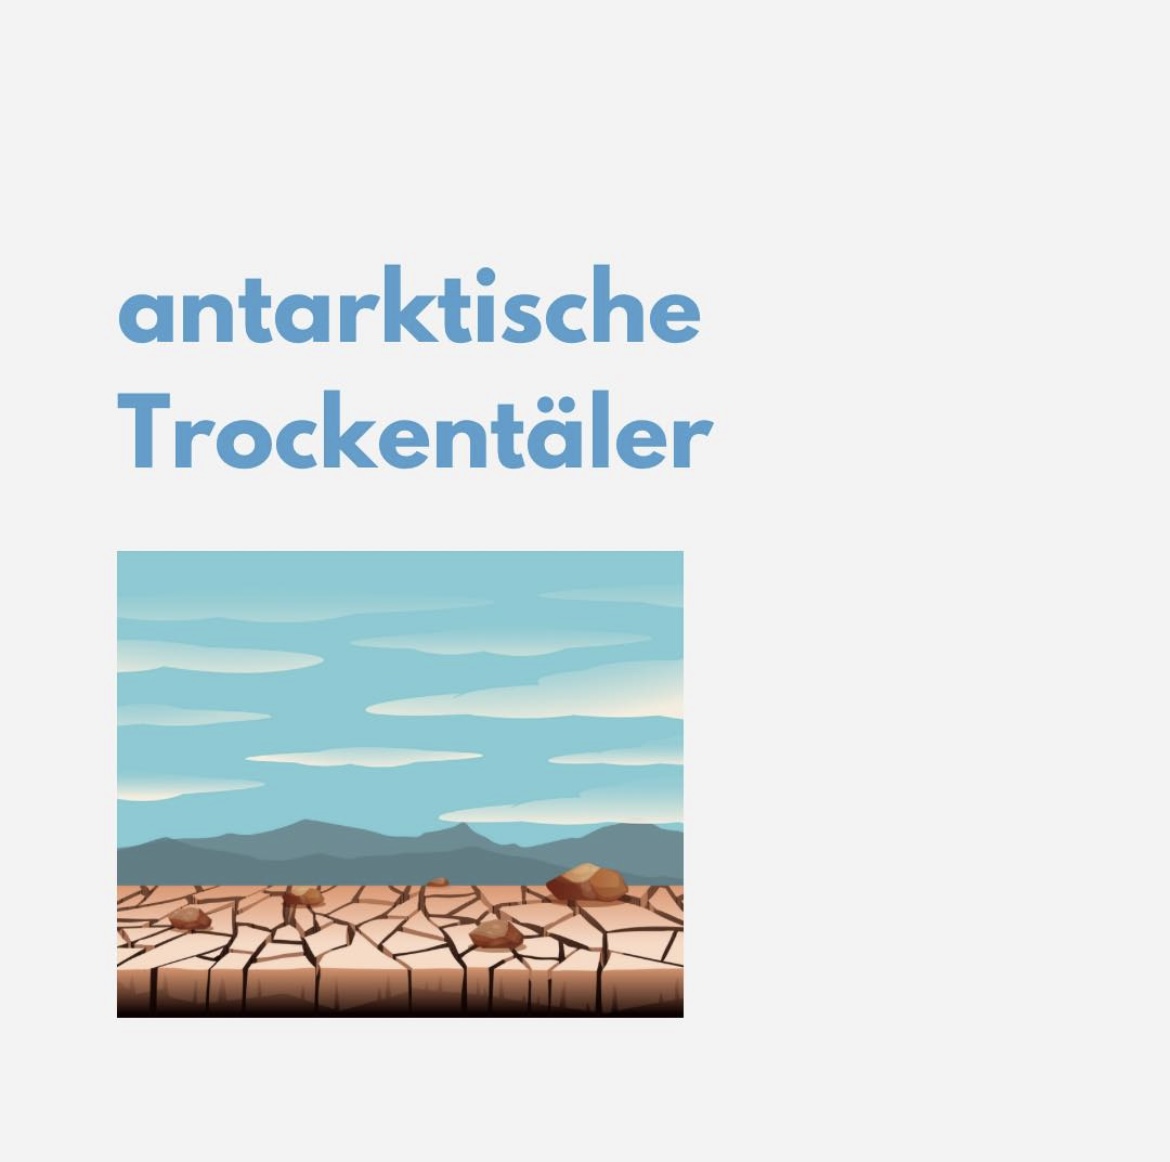 You are currently viewing Antarktische Trockentäler